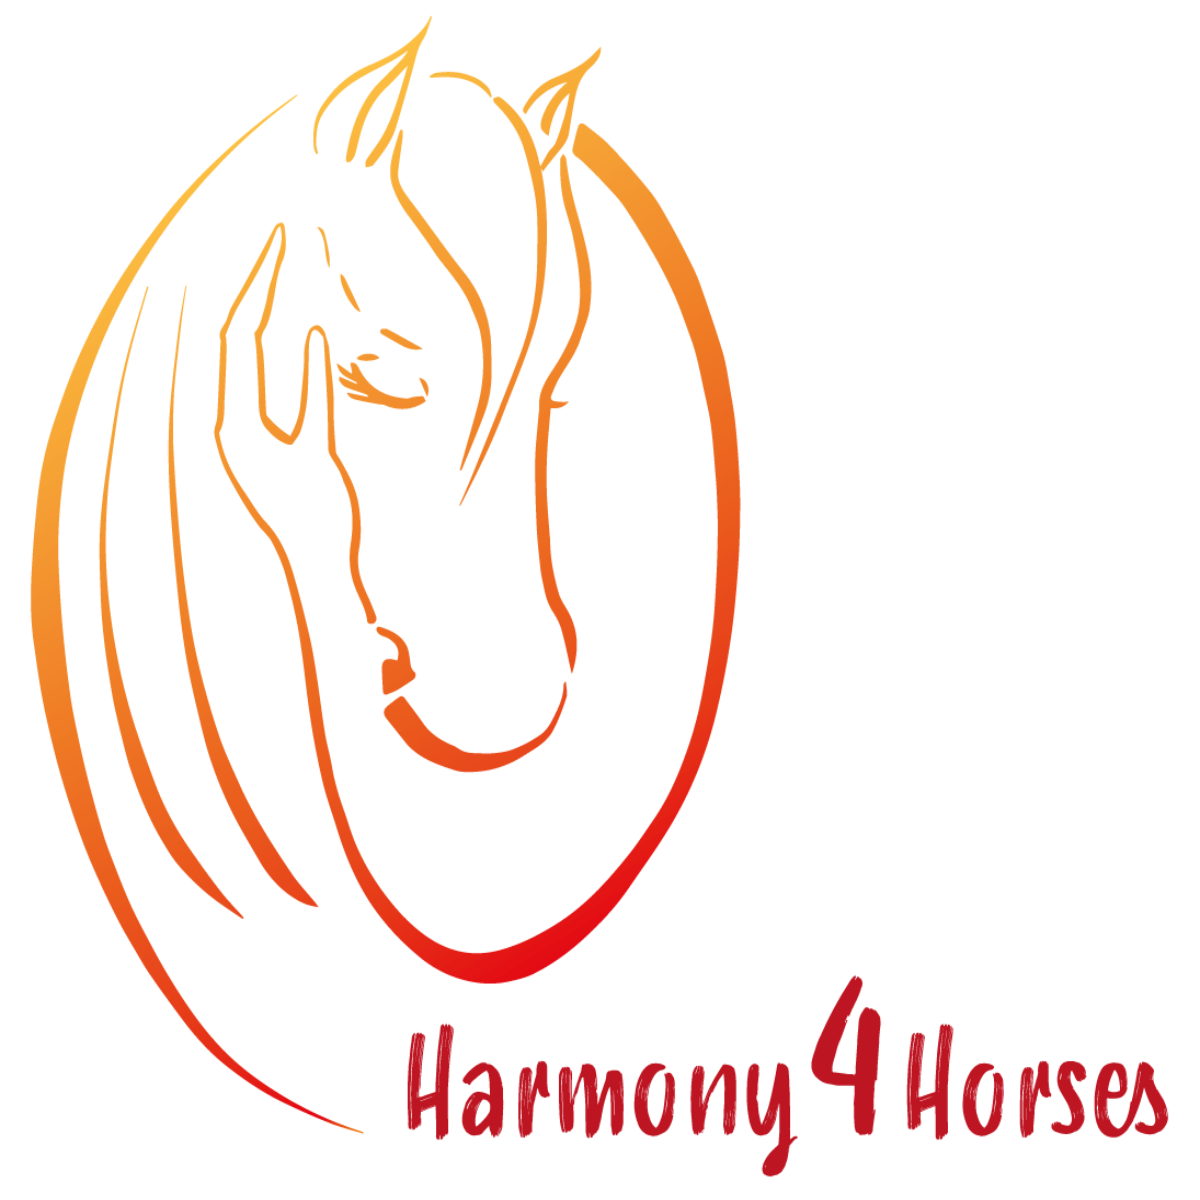 Harmony4Horses